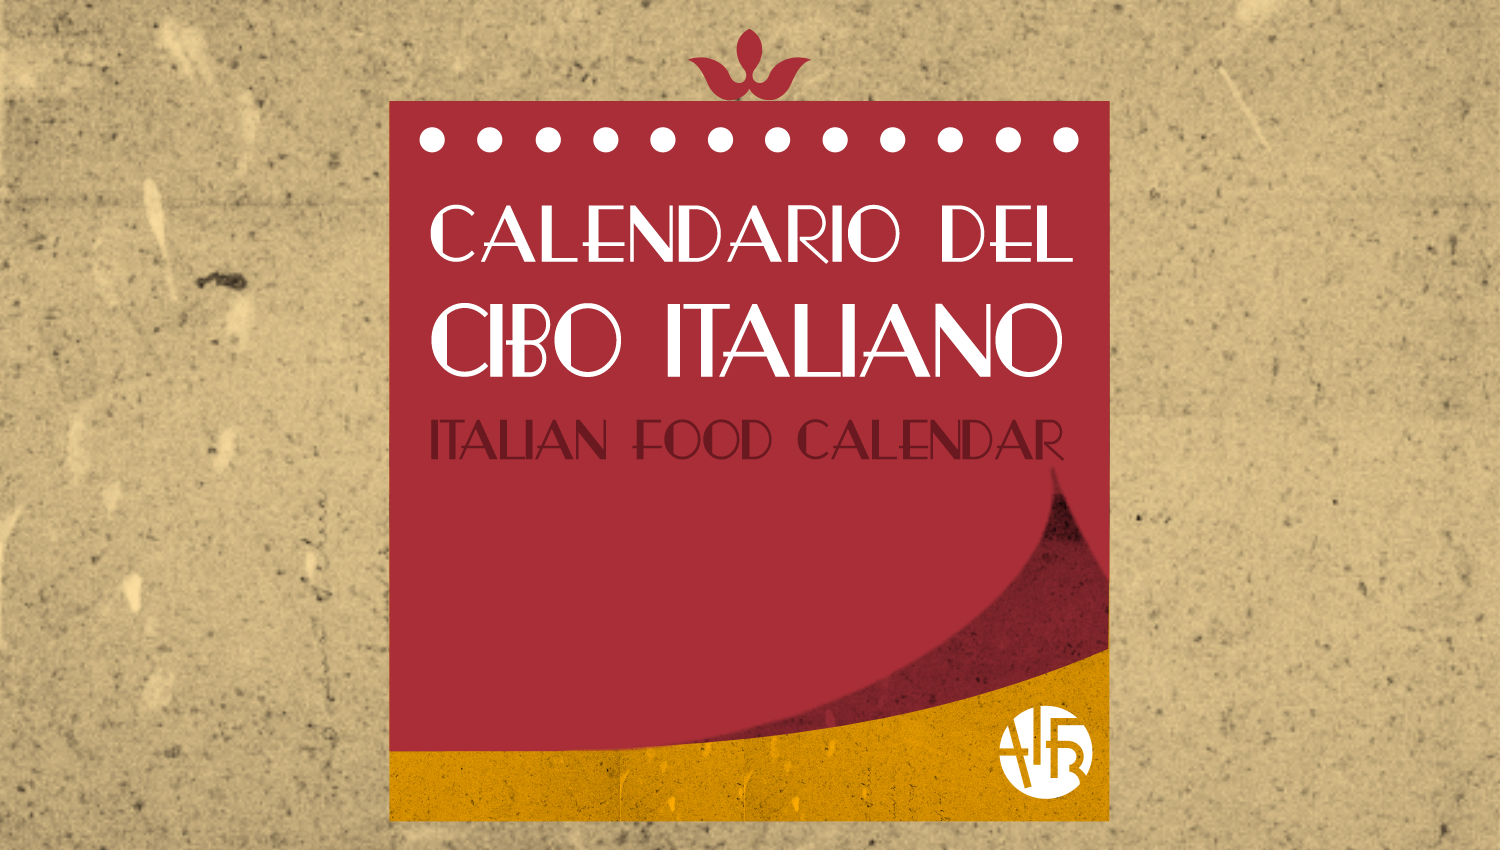 Il Calendario del Cibo Italiano di AIFB